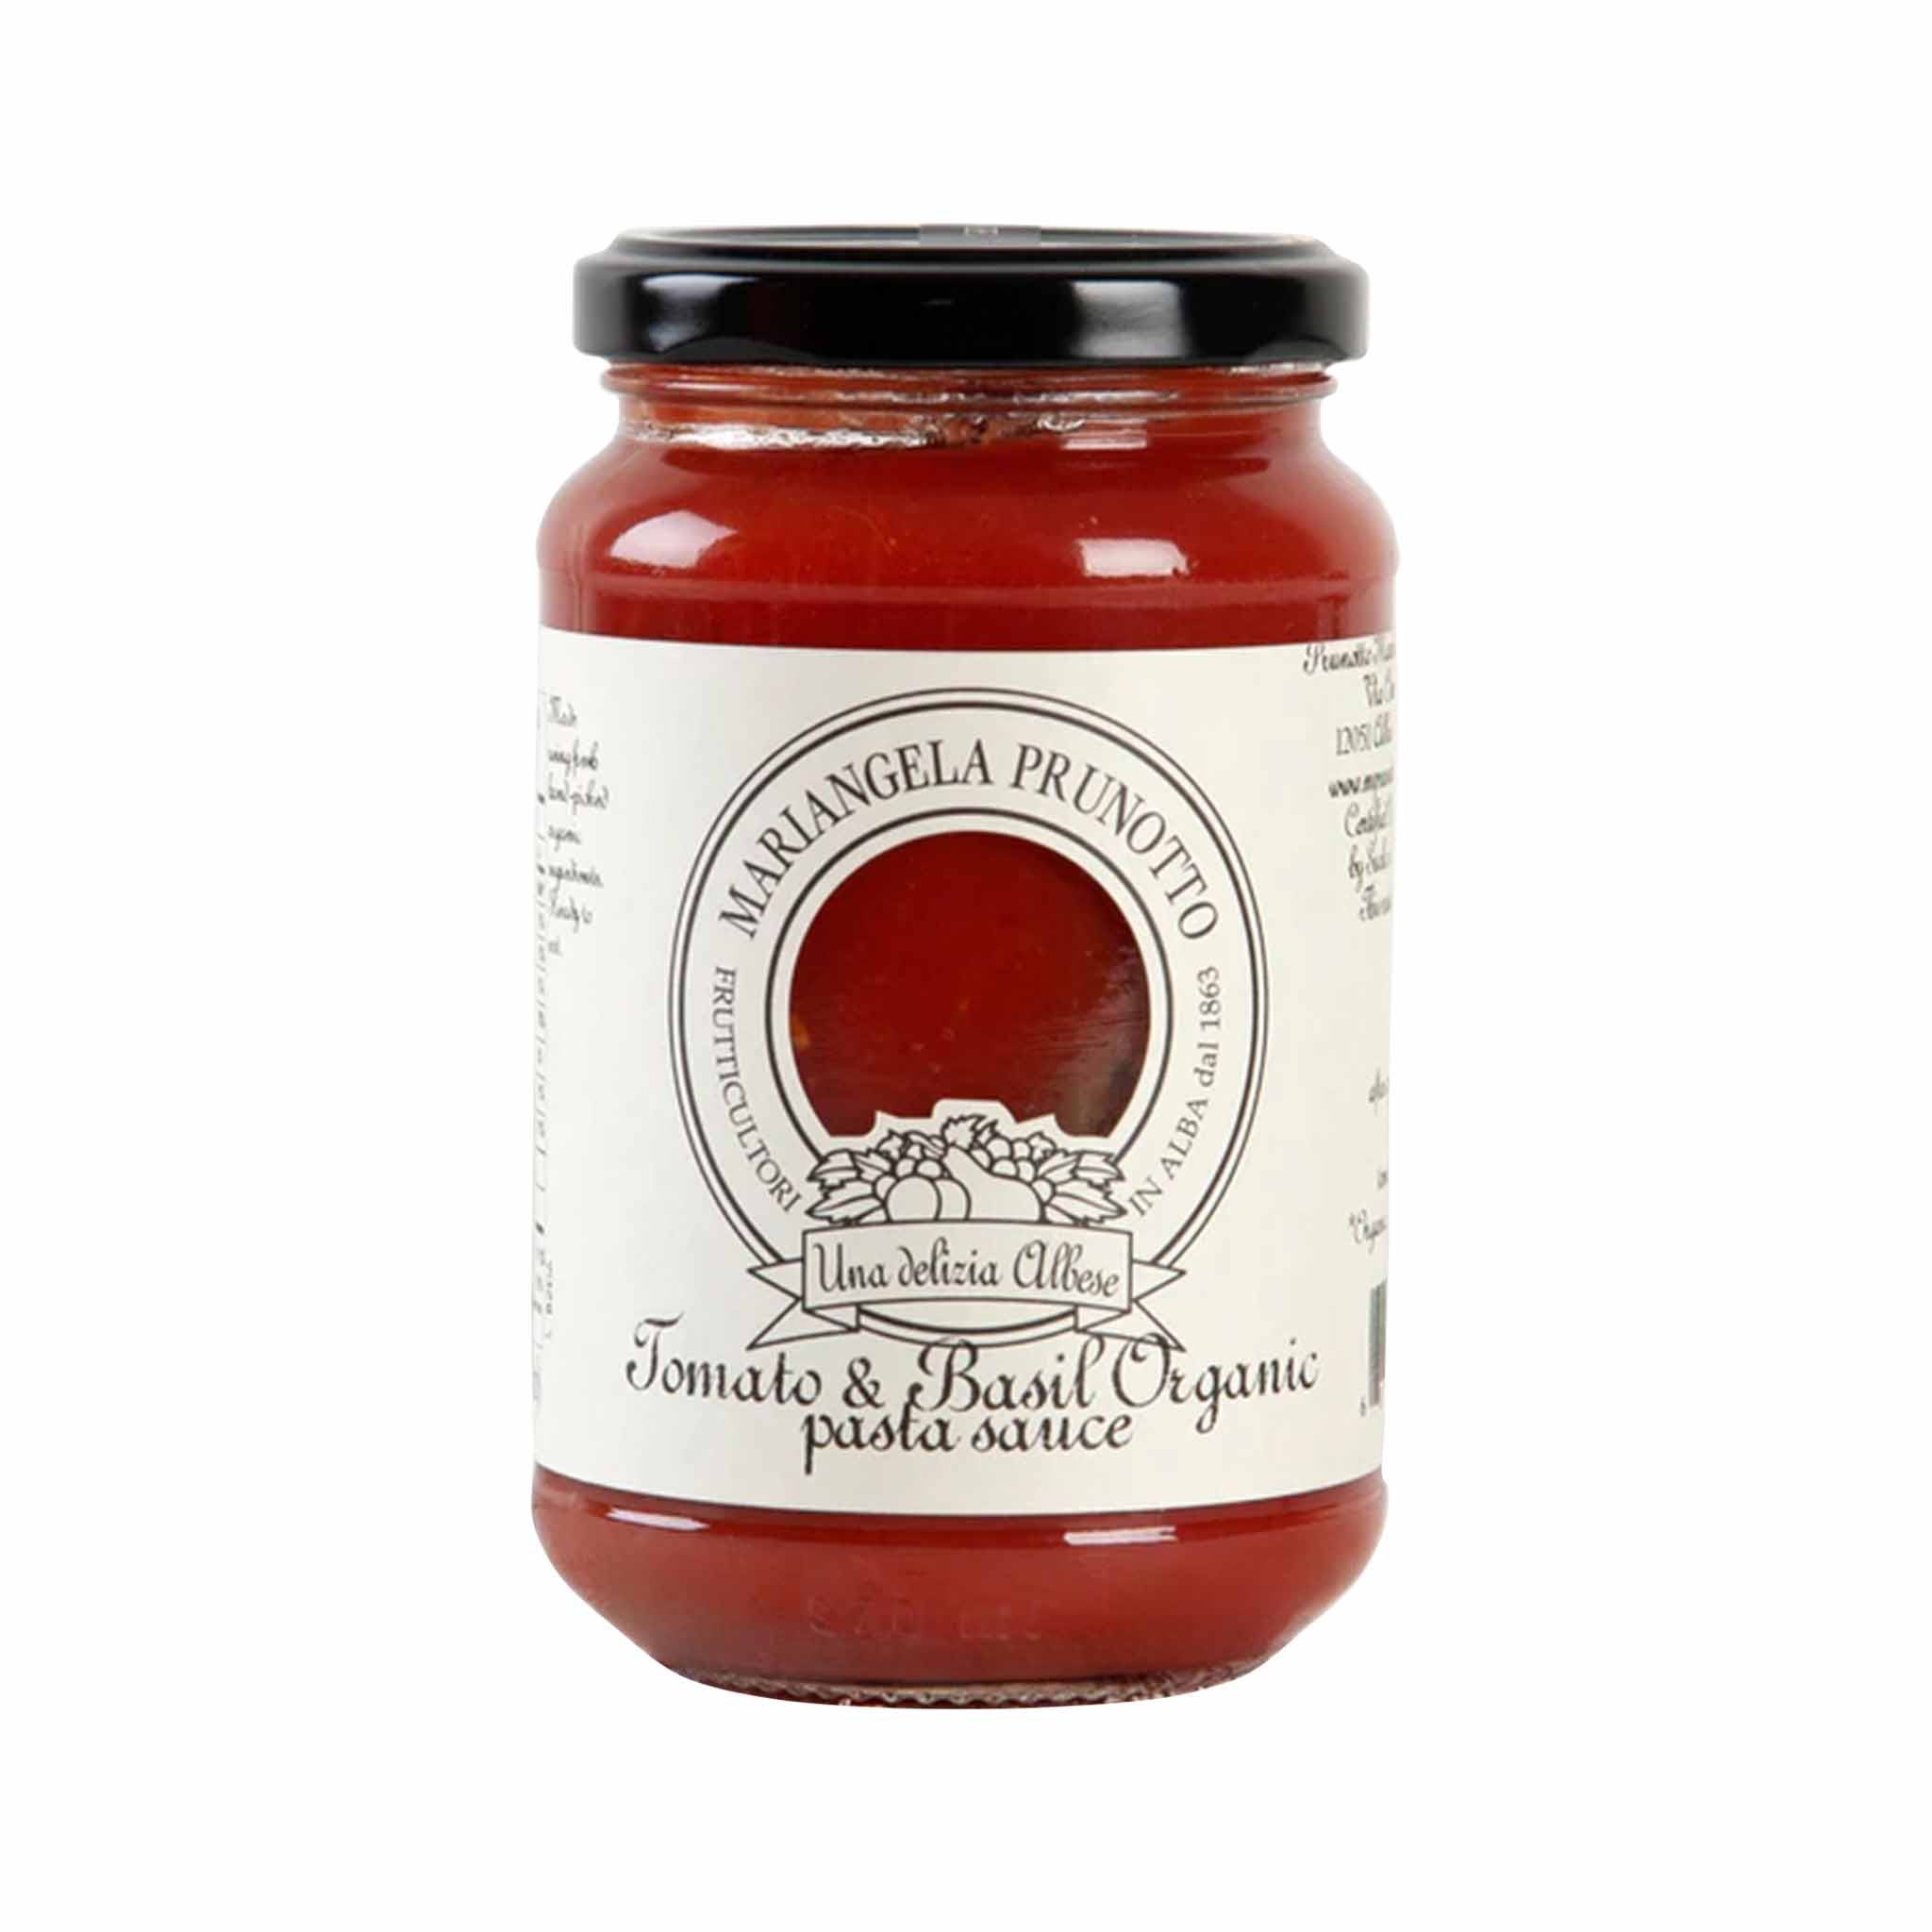 Prunotto Organic Tomato Basil Sauce